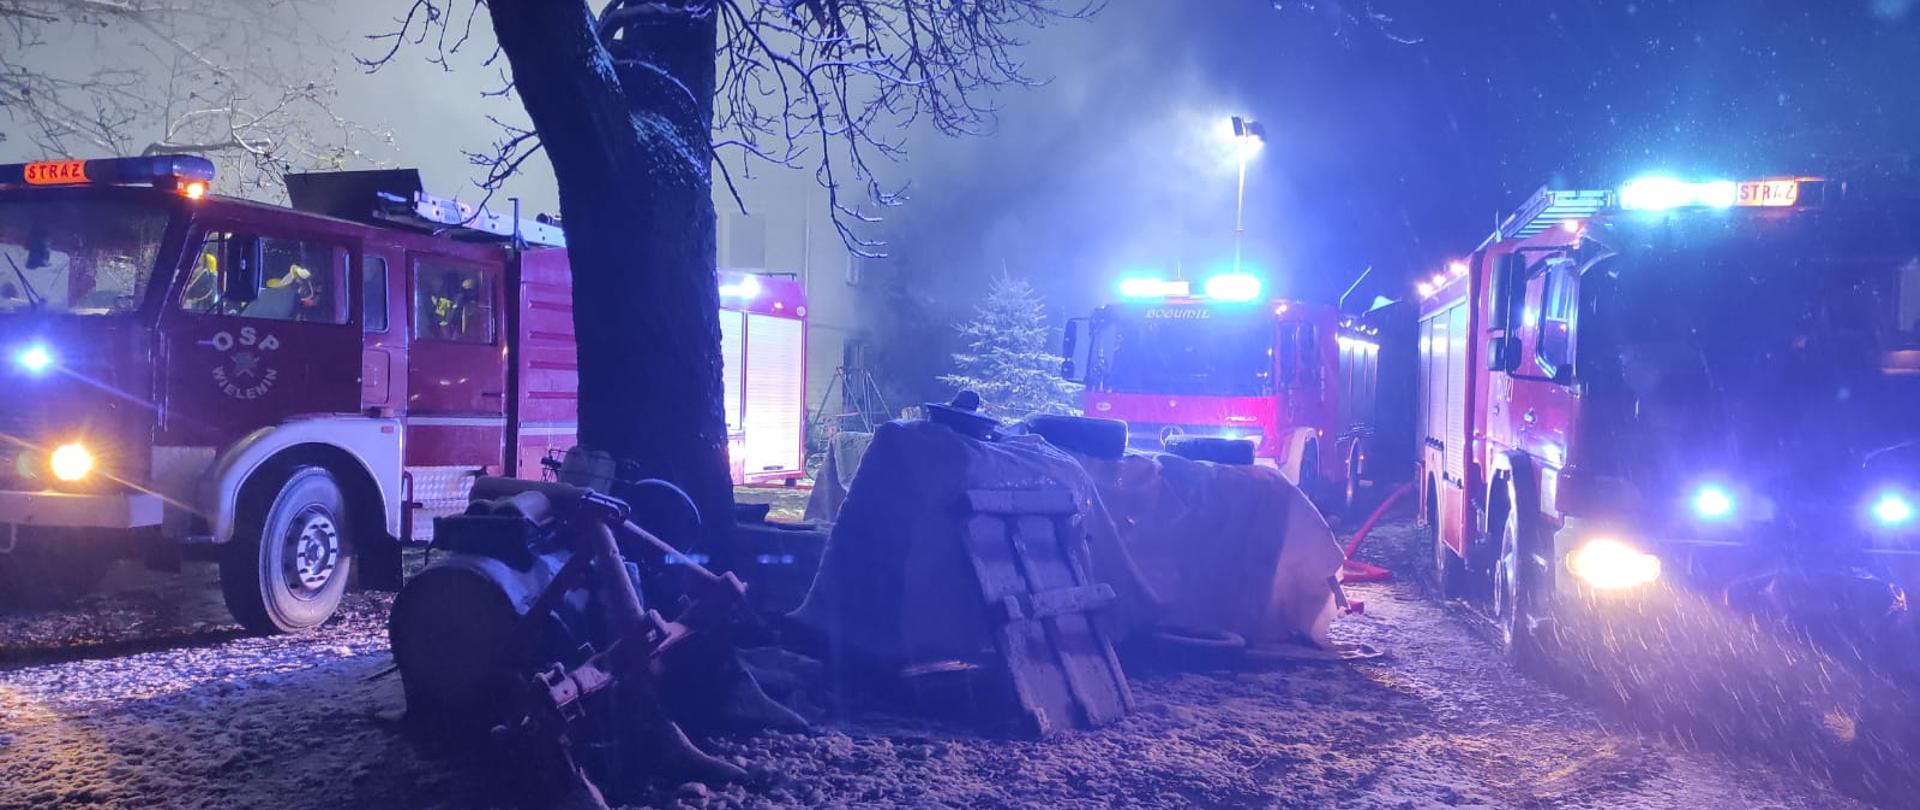 Zdjęcie przedstawia trzy wozy straży pożarnej z włączonymi światłami ostrzegawczymi stojące na posesji na której powstał pożar